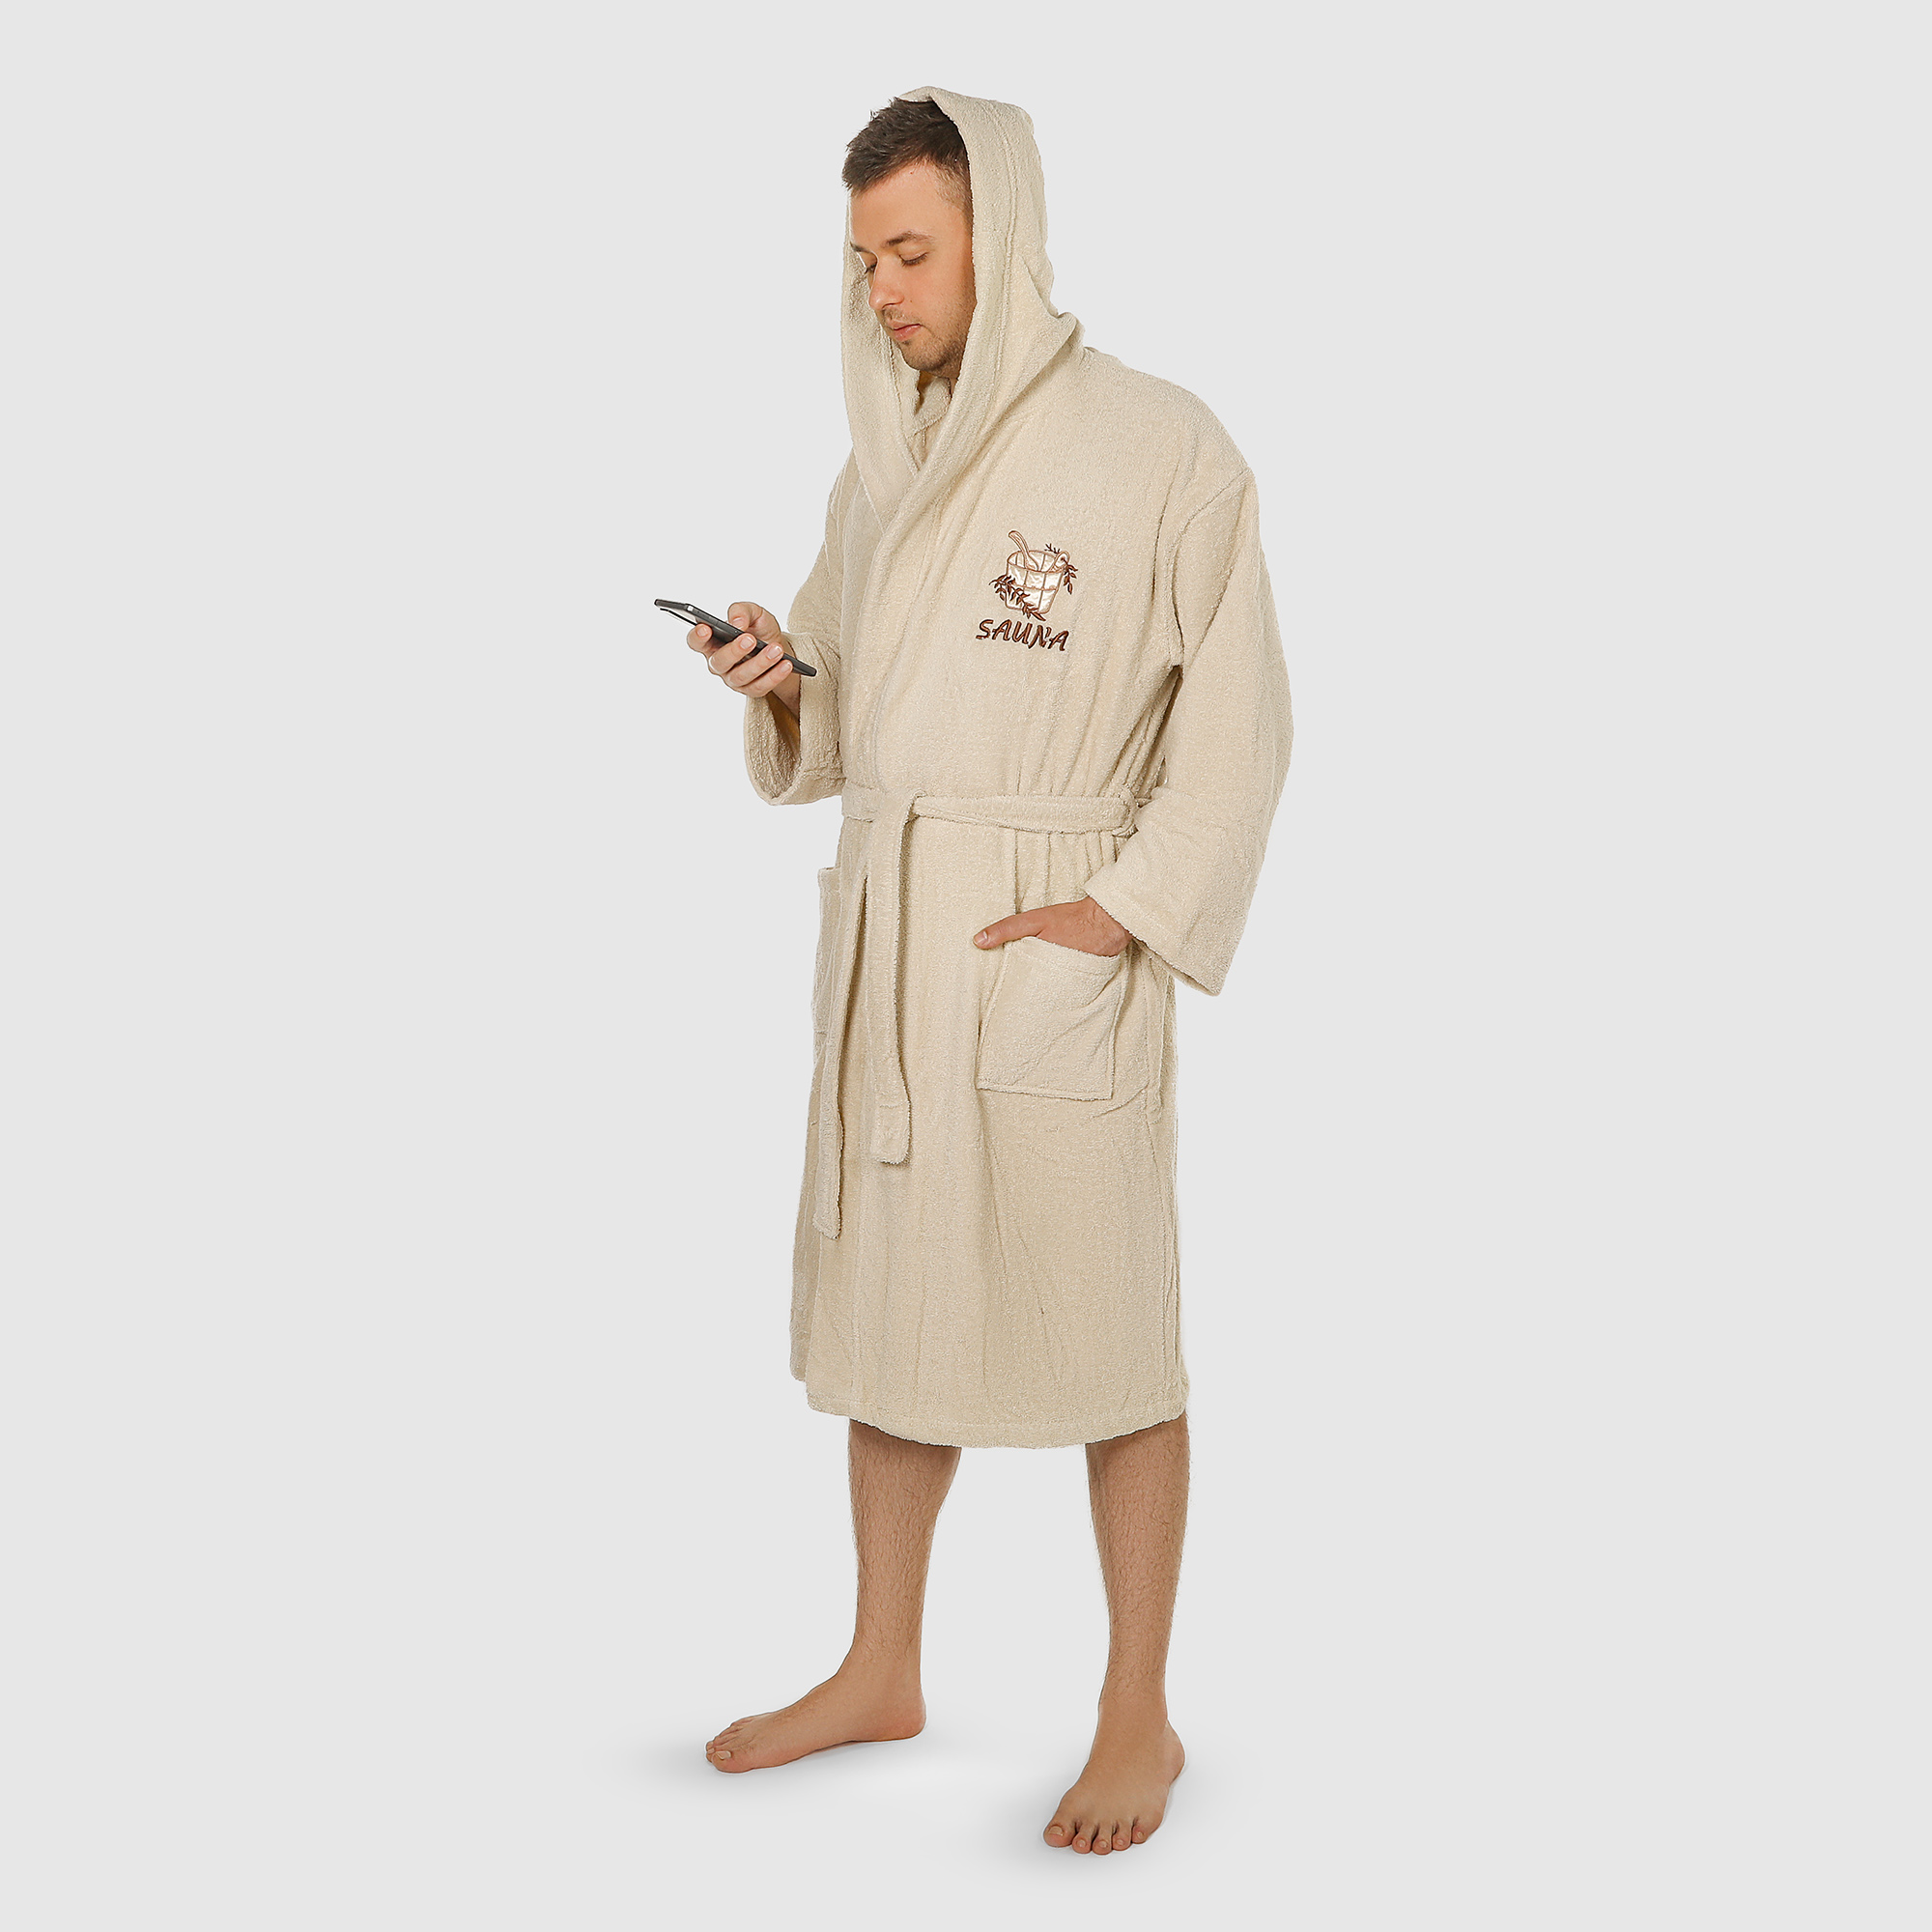 Халат мужской Asil Sauna brown XL махровый с капюшоном халат мужской asil sauna kimono brown xl вафельный